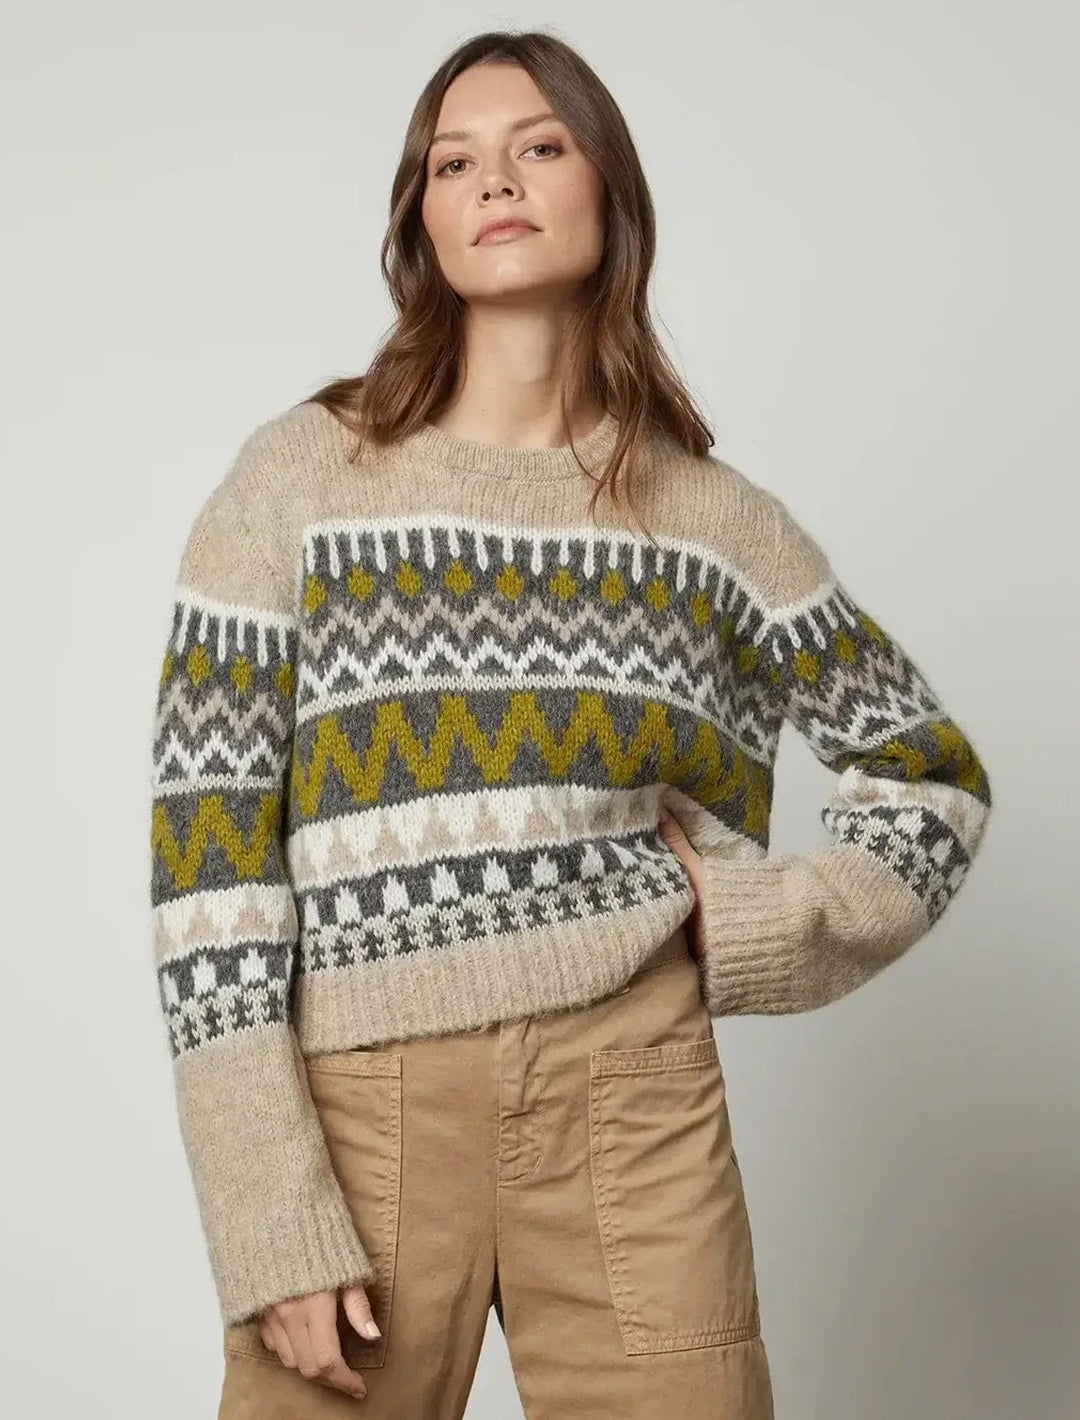 Model wearing Velvet's Makenzie Sweater in Pistachio Multi.